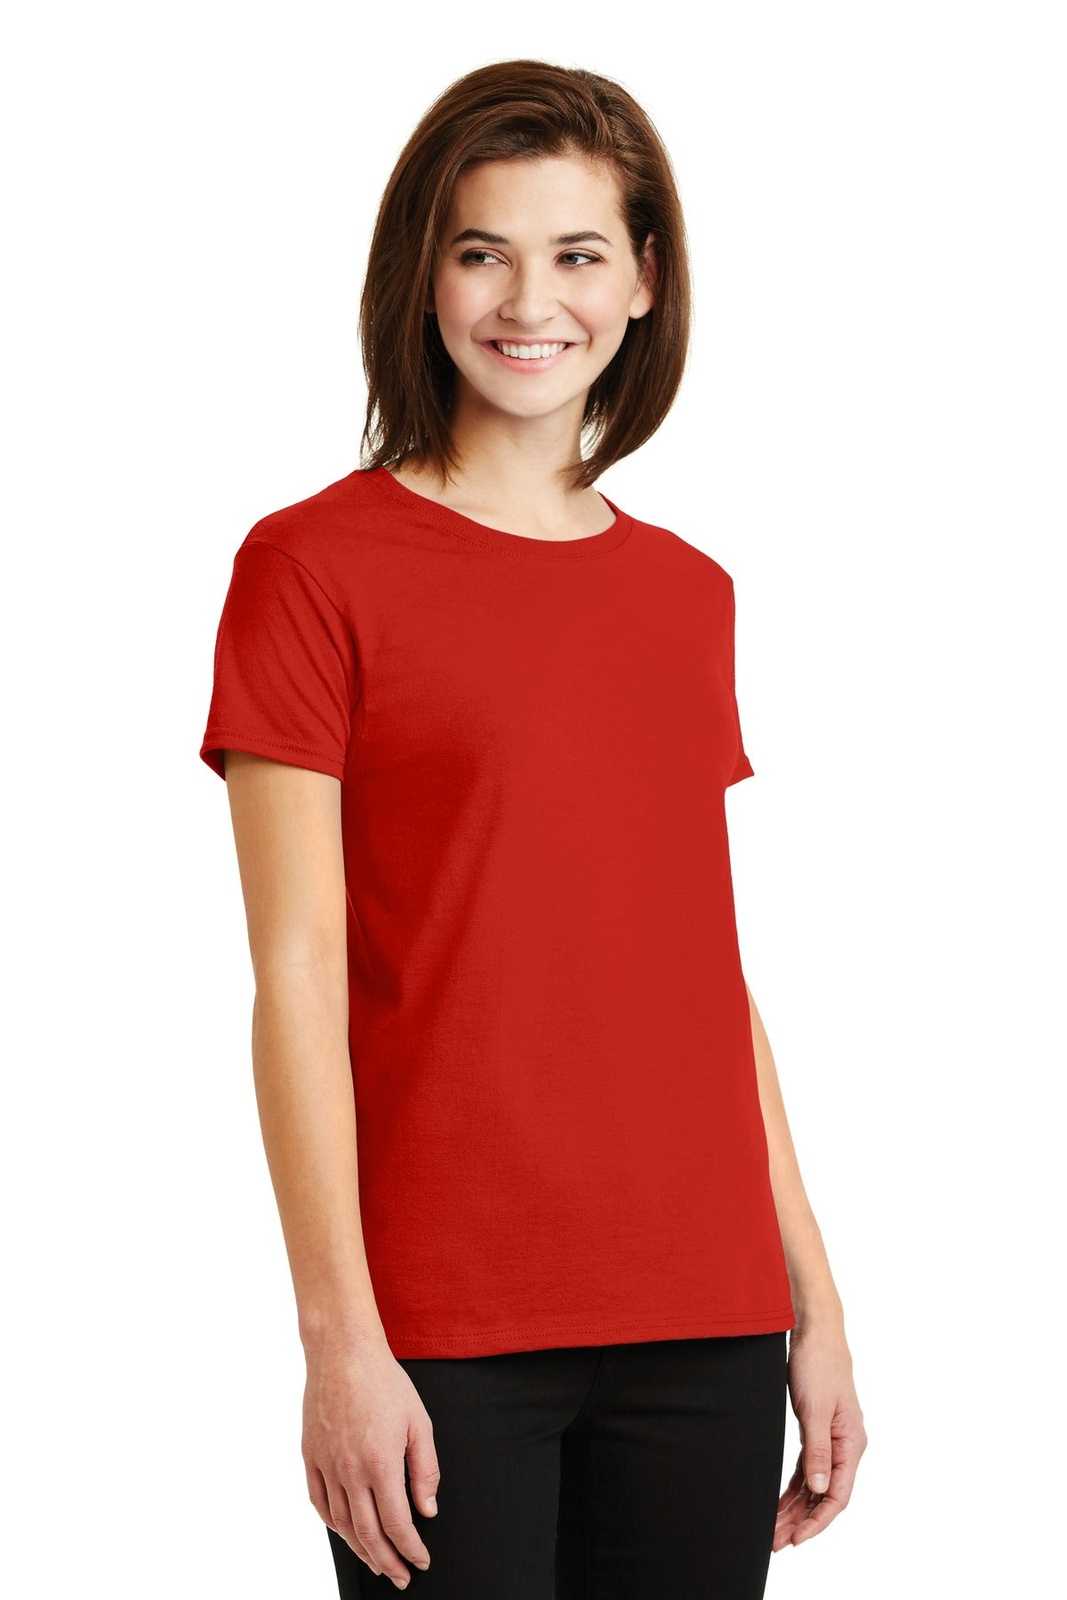 Gildan 2000L Ladies Ultra Cotton 100% Cotton T-Shirt - Red - HIT a Double